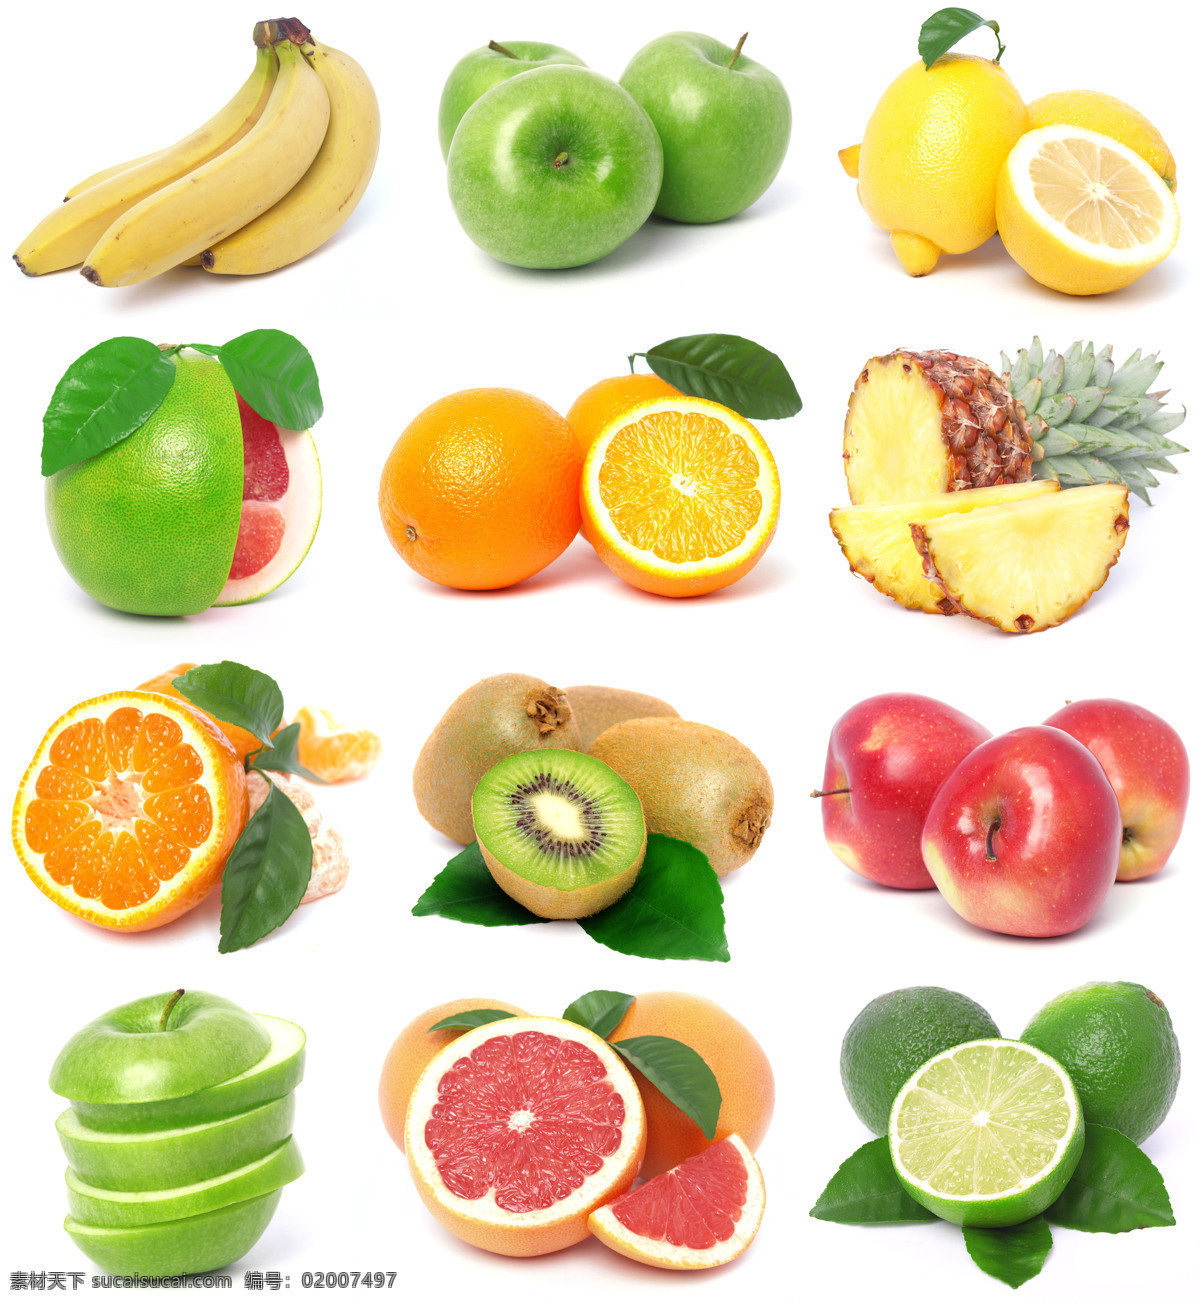 高清水果摄影 香蕉 苹果 柠檬 橙子 菠萝 猕猴桃 青苹果 石榴 食物 美食 水果 水果广告 水果素材 水果蔬菜 餐饮美食 白色